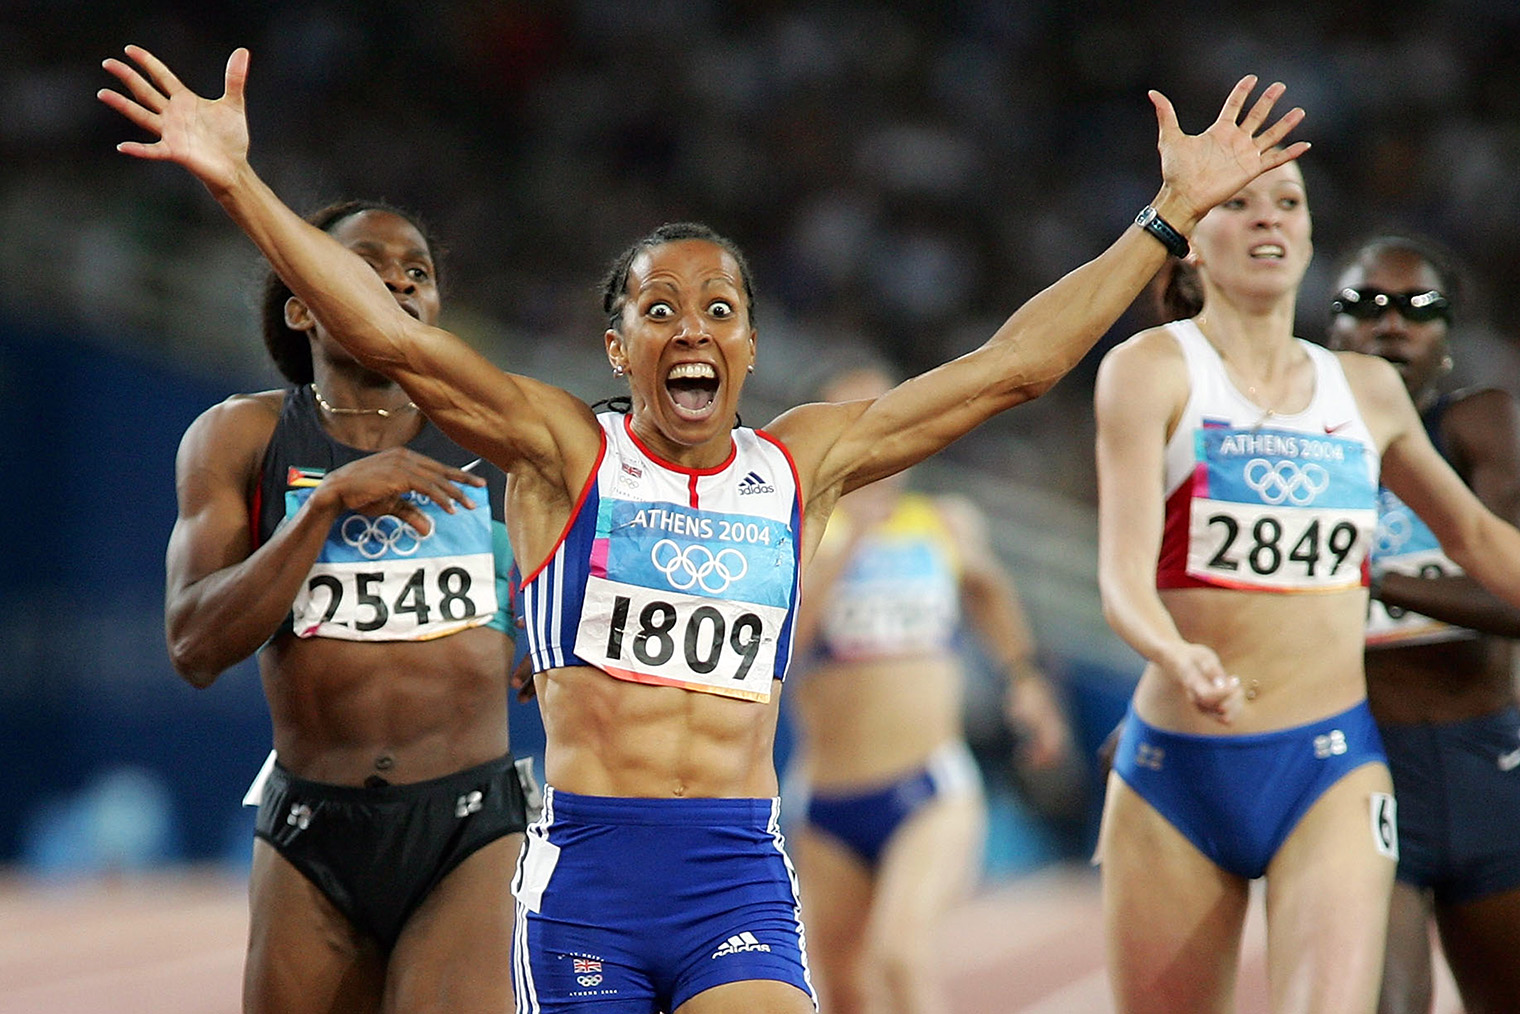 Келли Холмс из сборной Великобритании финиширует первой в беге на 1500 м на Олимпиаде 2004 года в Афинах. Фотография: Stu Forster / Getty Images